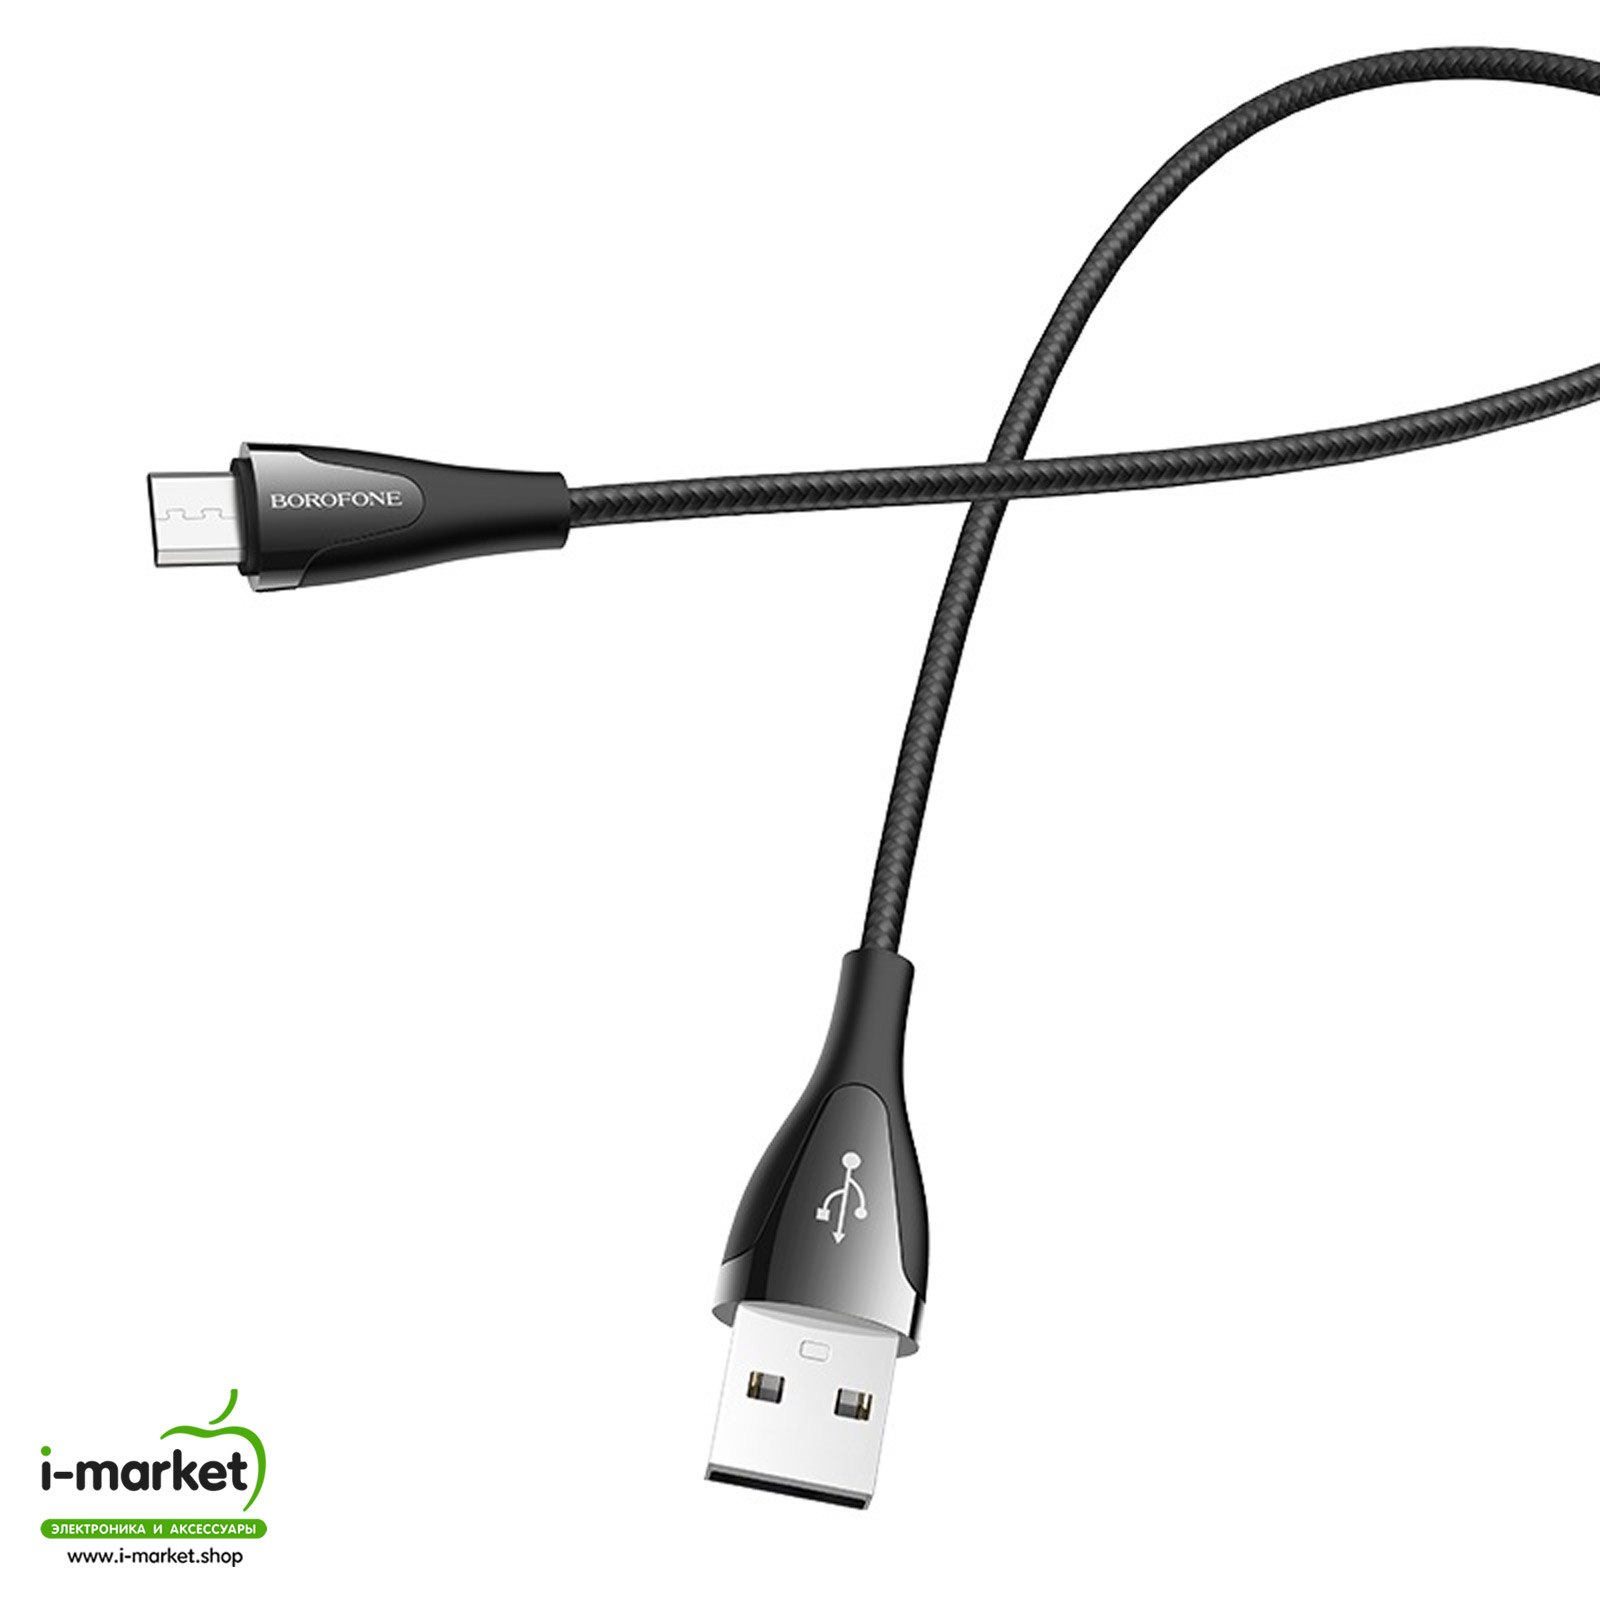 BOROFONE BU20 Advantageous кабель Micro-USB устройств, длина 1.2 метр, ток до 2.4A, цвет черный.